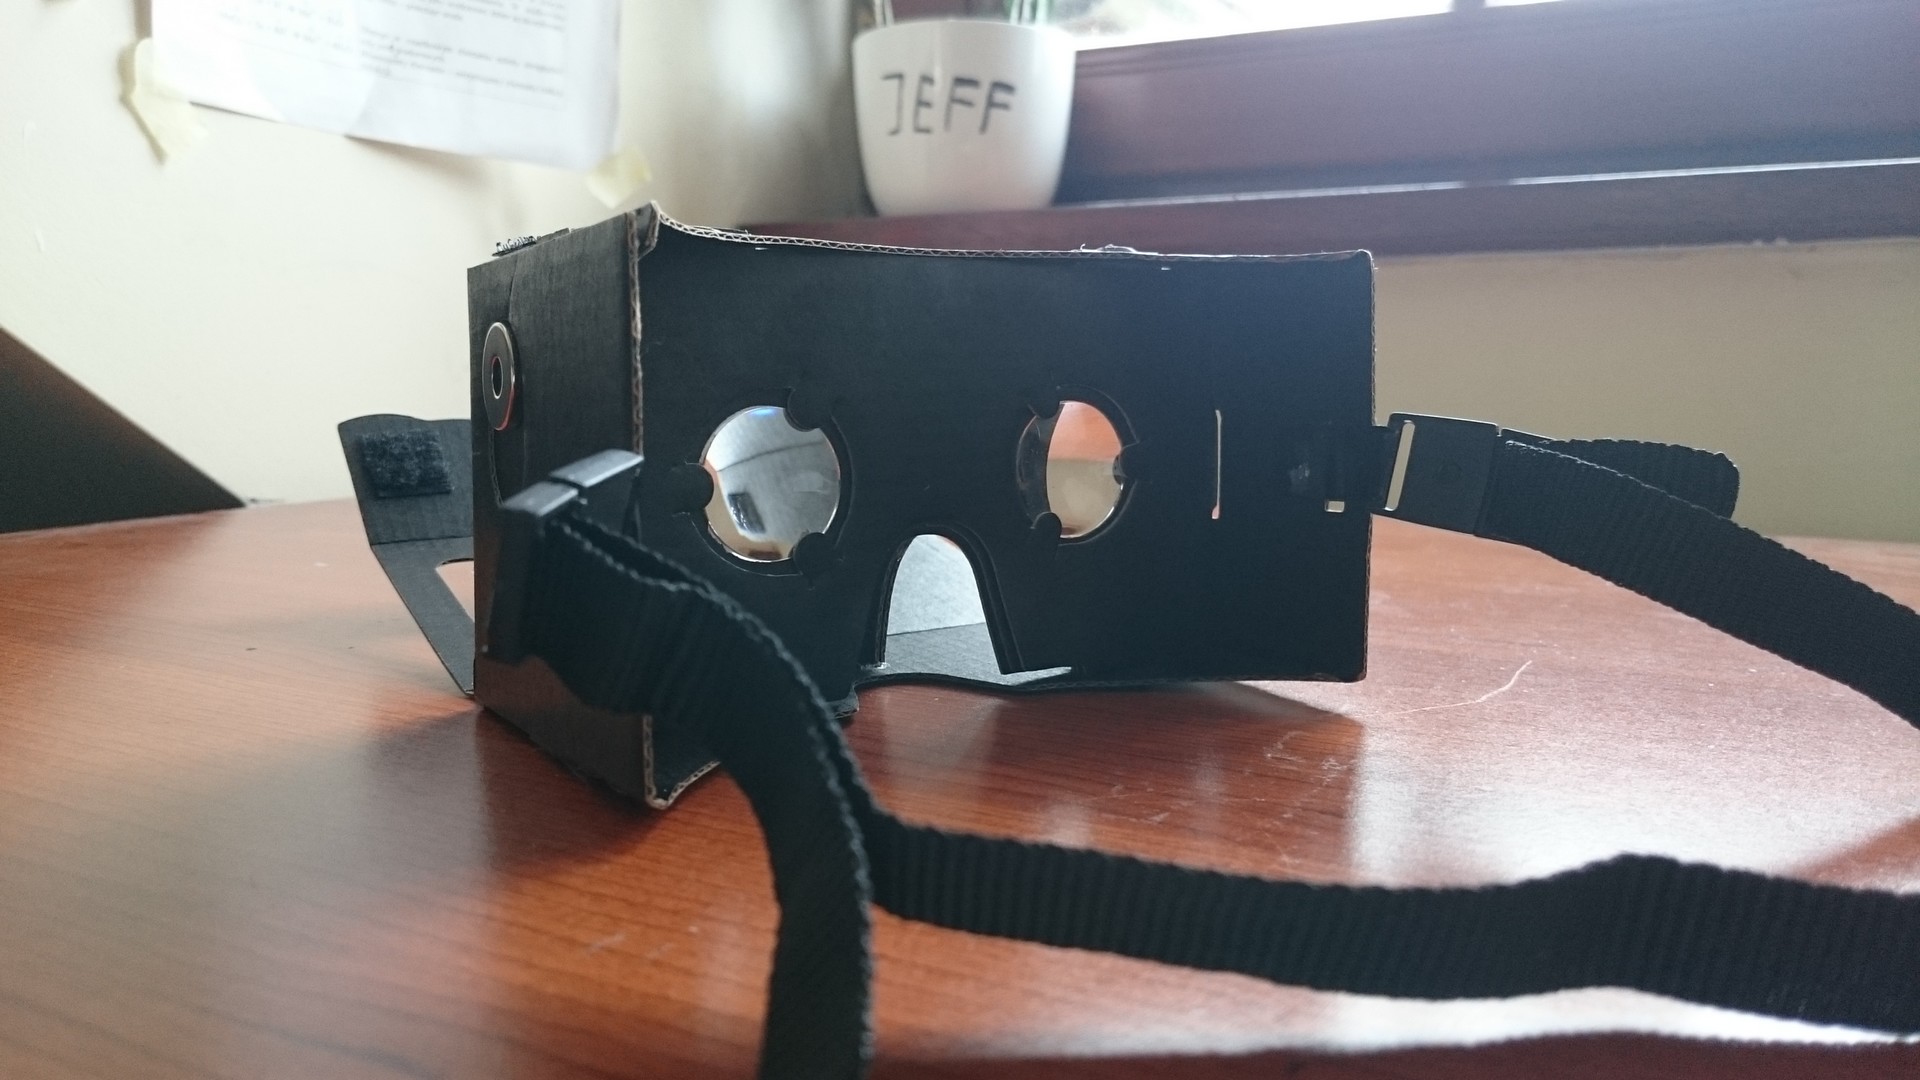 
Mamy już swoje gogle VR
, Google Cardboard - kartonowa wirtualna rzeczywistość dla każdego